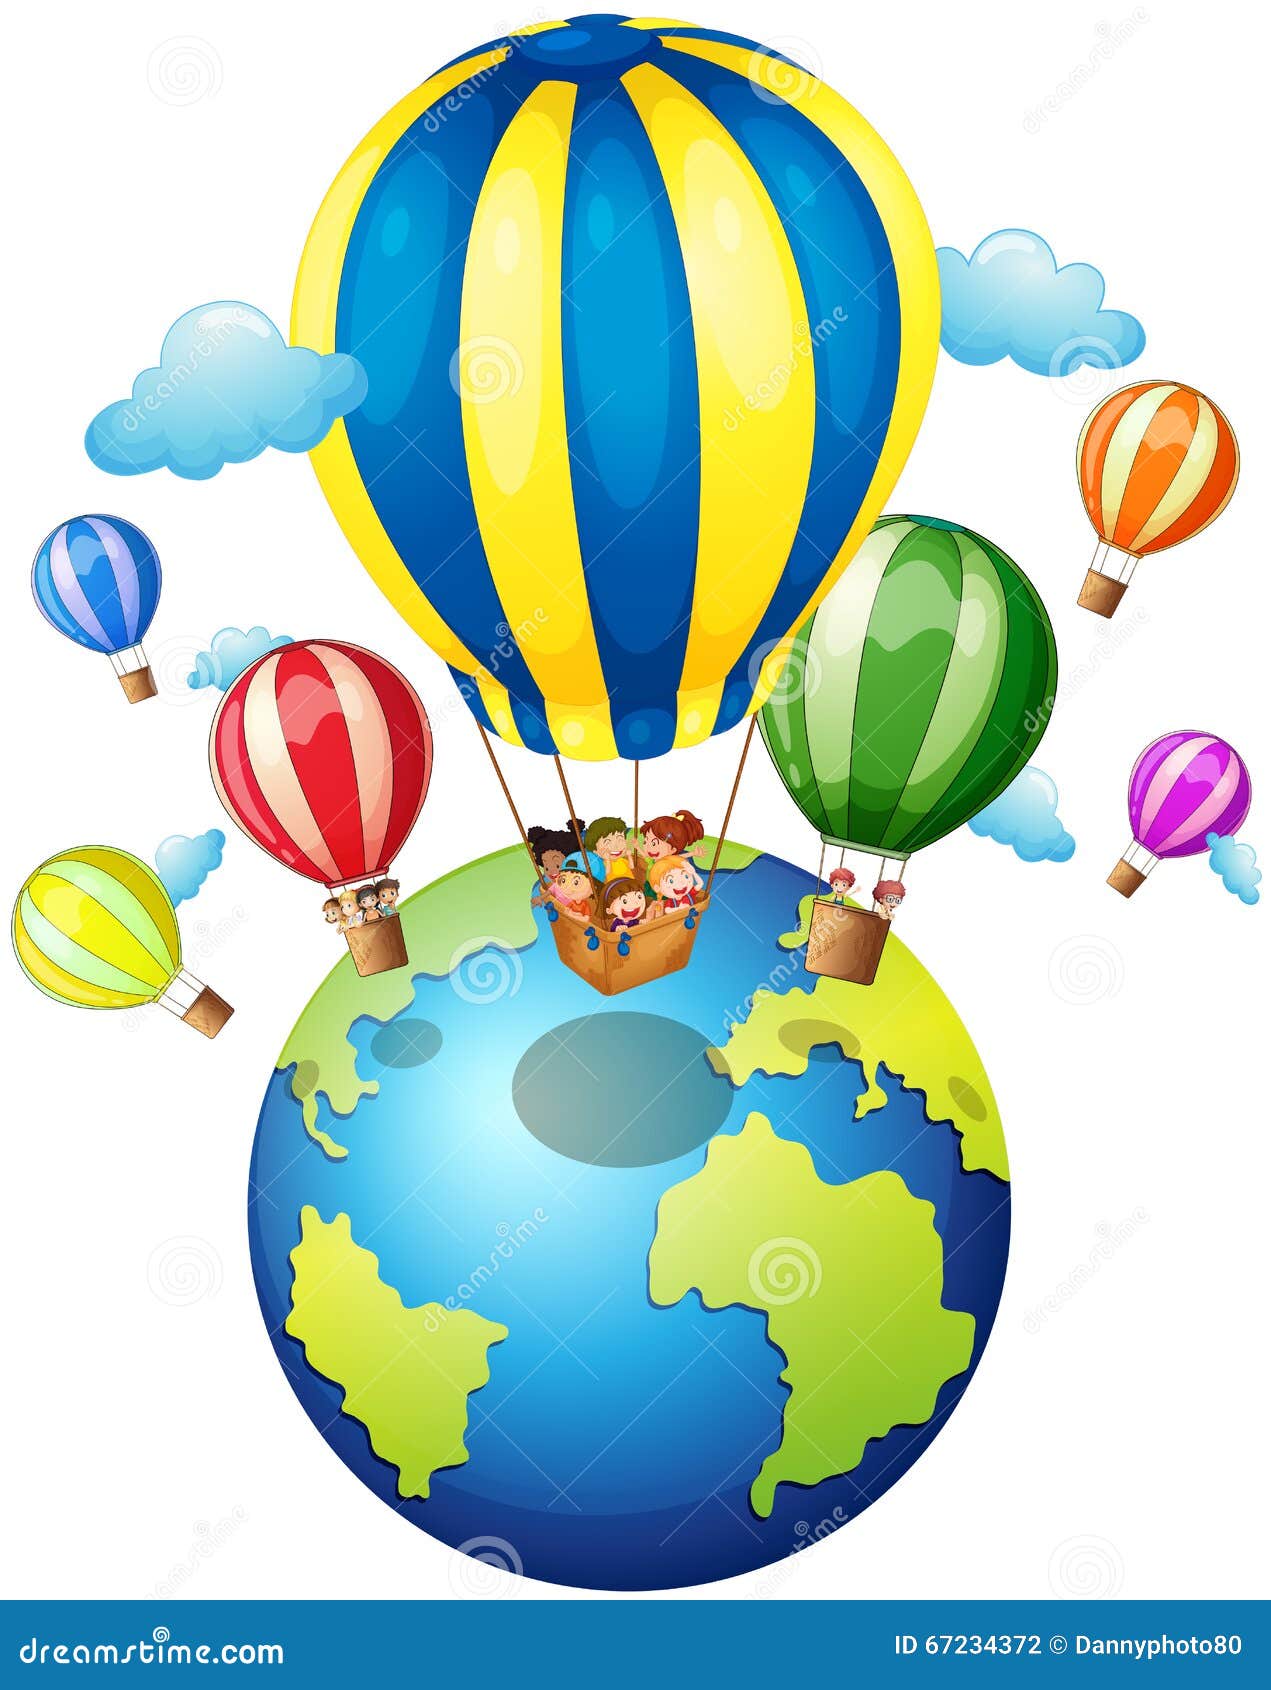 В страну знаний на воздушном шаре. Путешествие на воздушном шаре для детей. Вокруг света на воздушном шаре путешествие. Выпускной путешествие воздушный шар. Воздушный шар Планета.